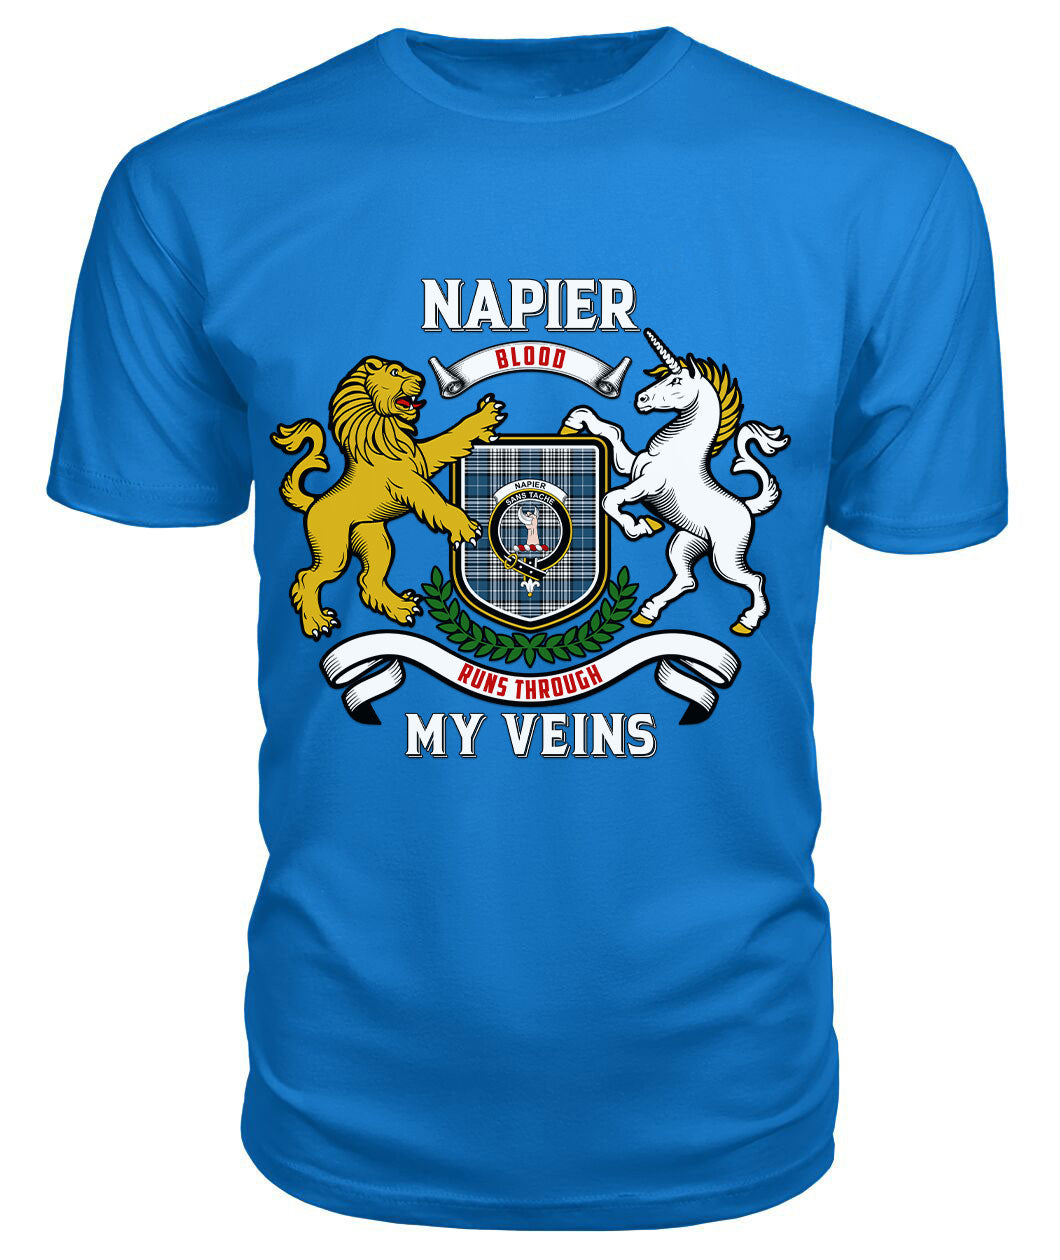 Napier Modern Tartan Crest 2D T-shirt - Blood Runs Through My Veins Style